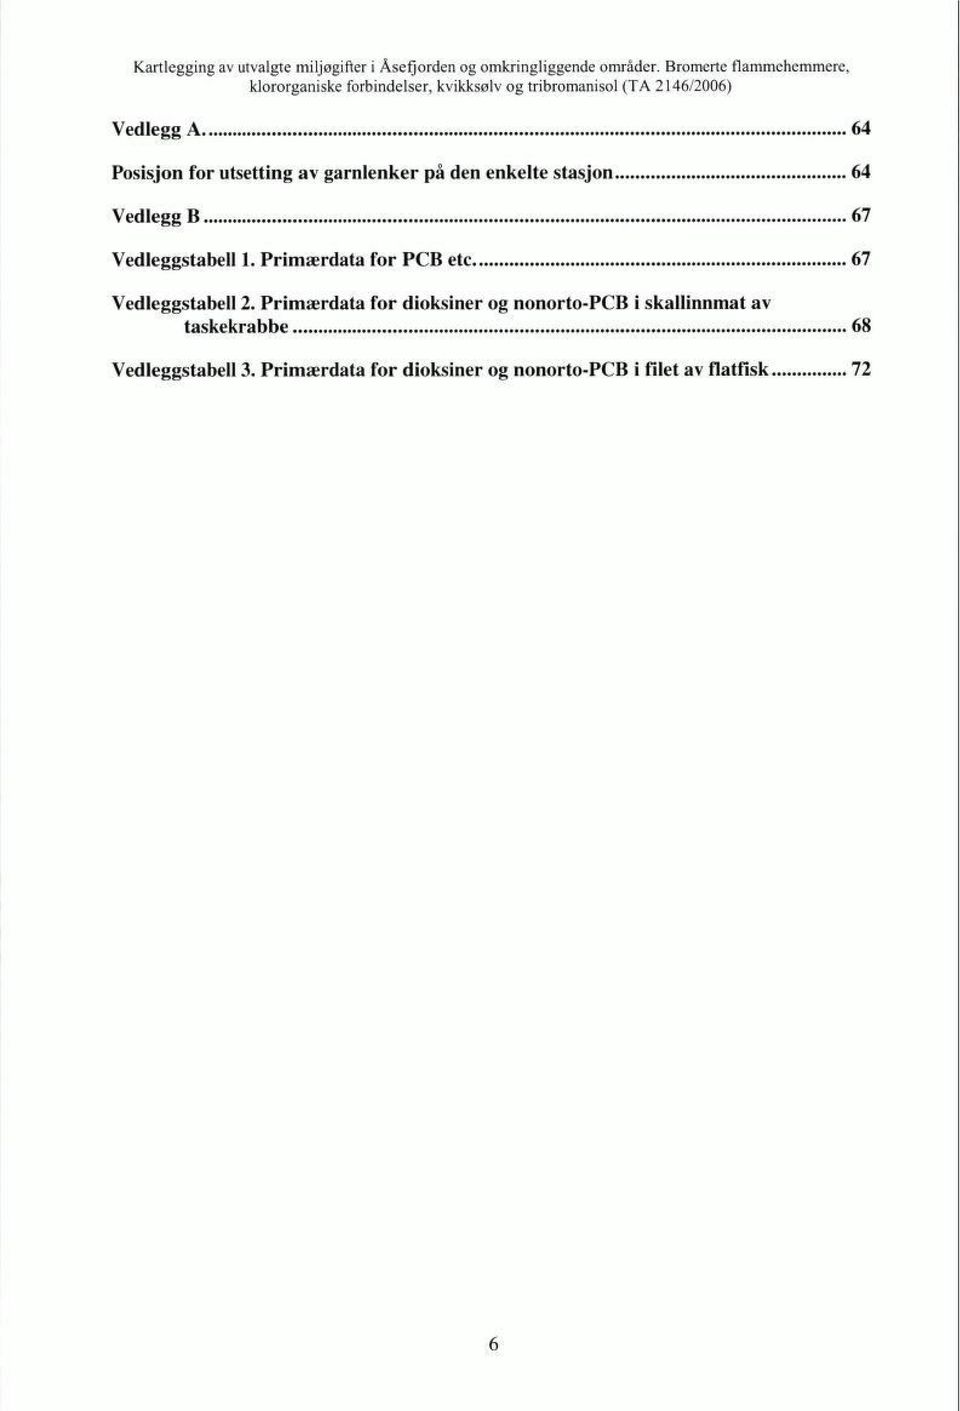 Primærdata for dioksiner og nonorto-pcb i skallinnmat av taskekrabbe 68